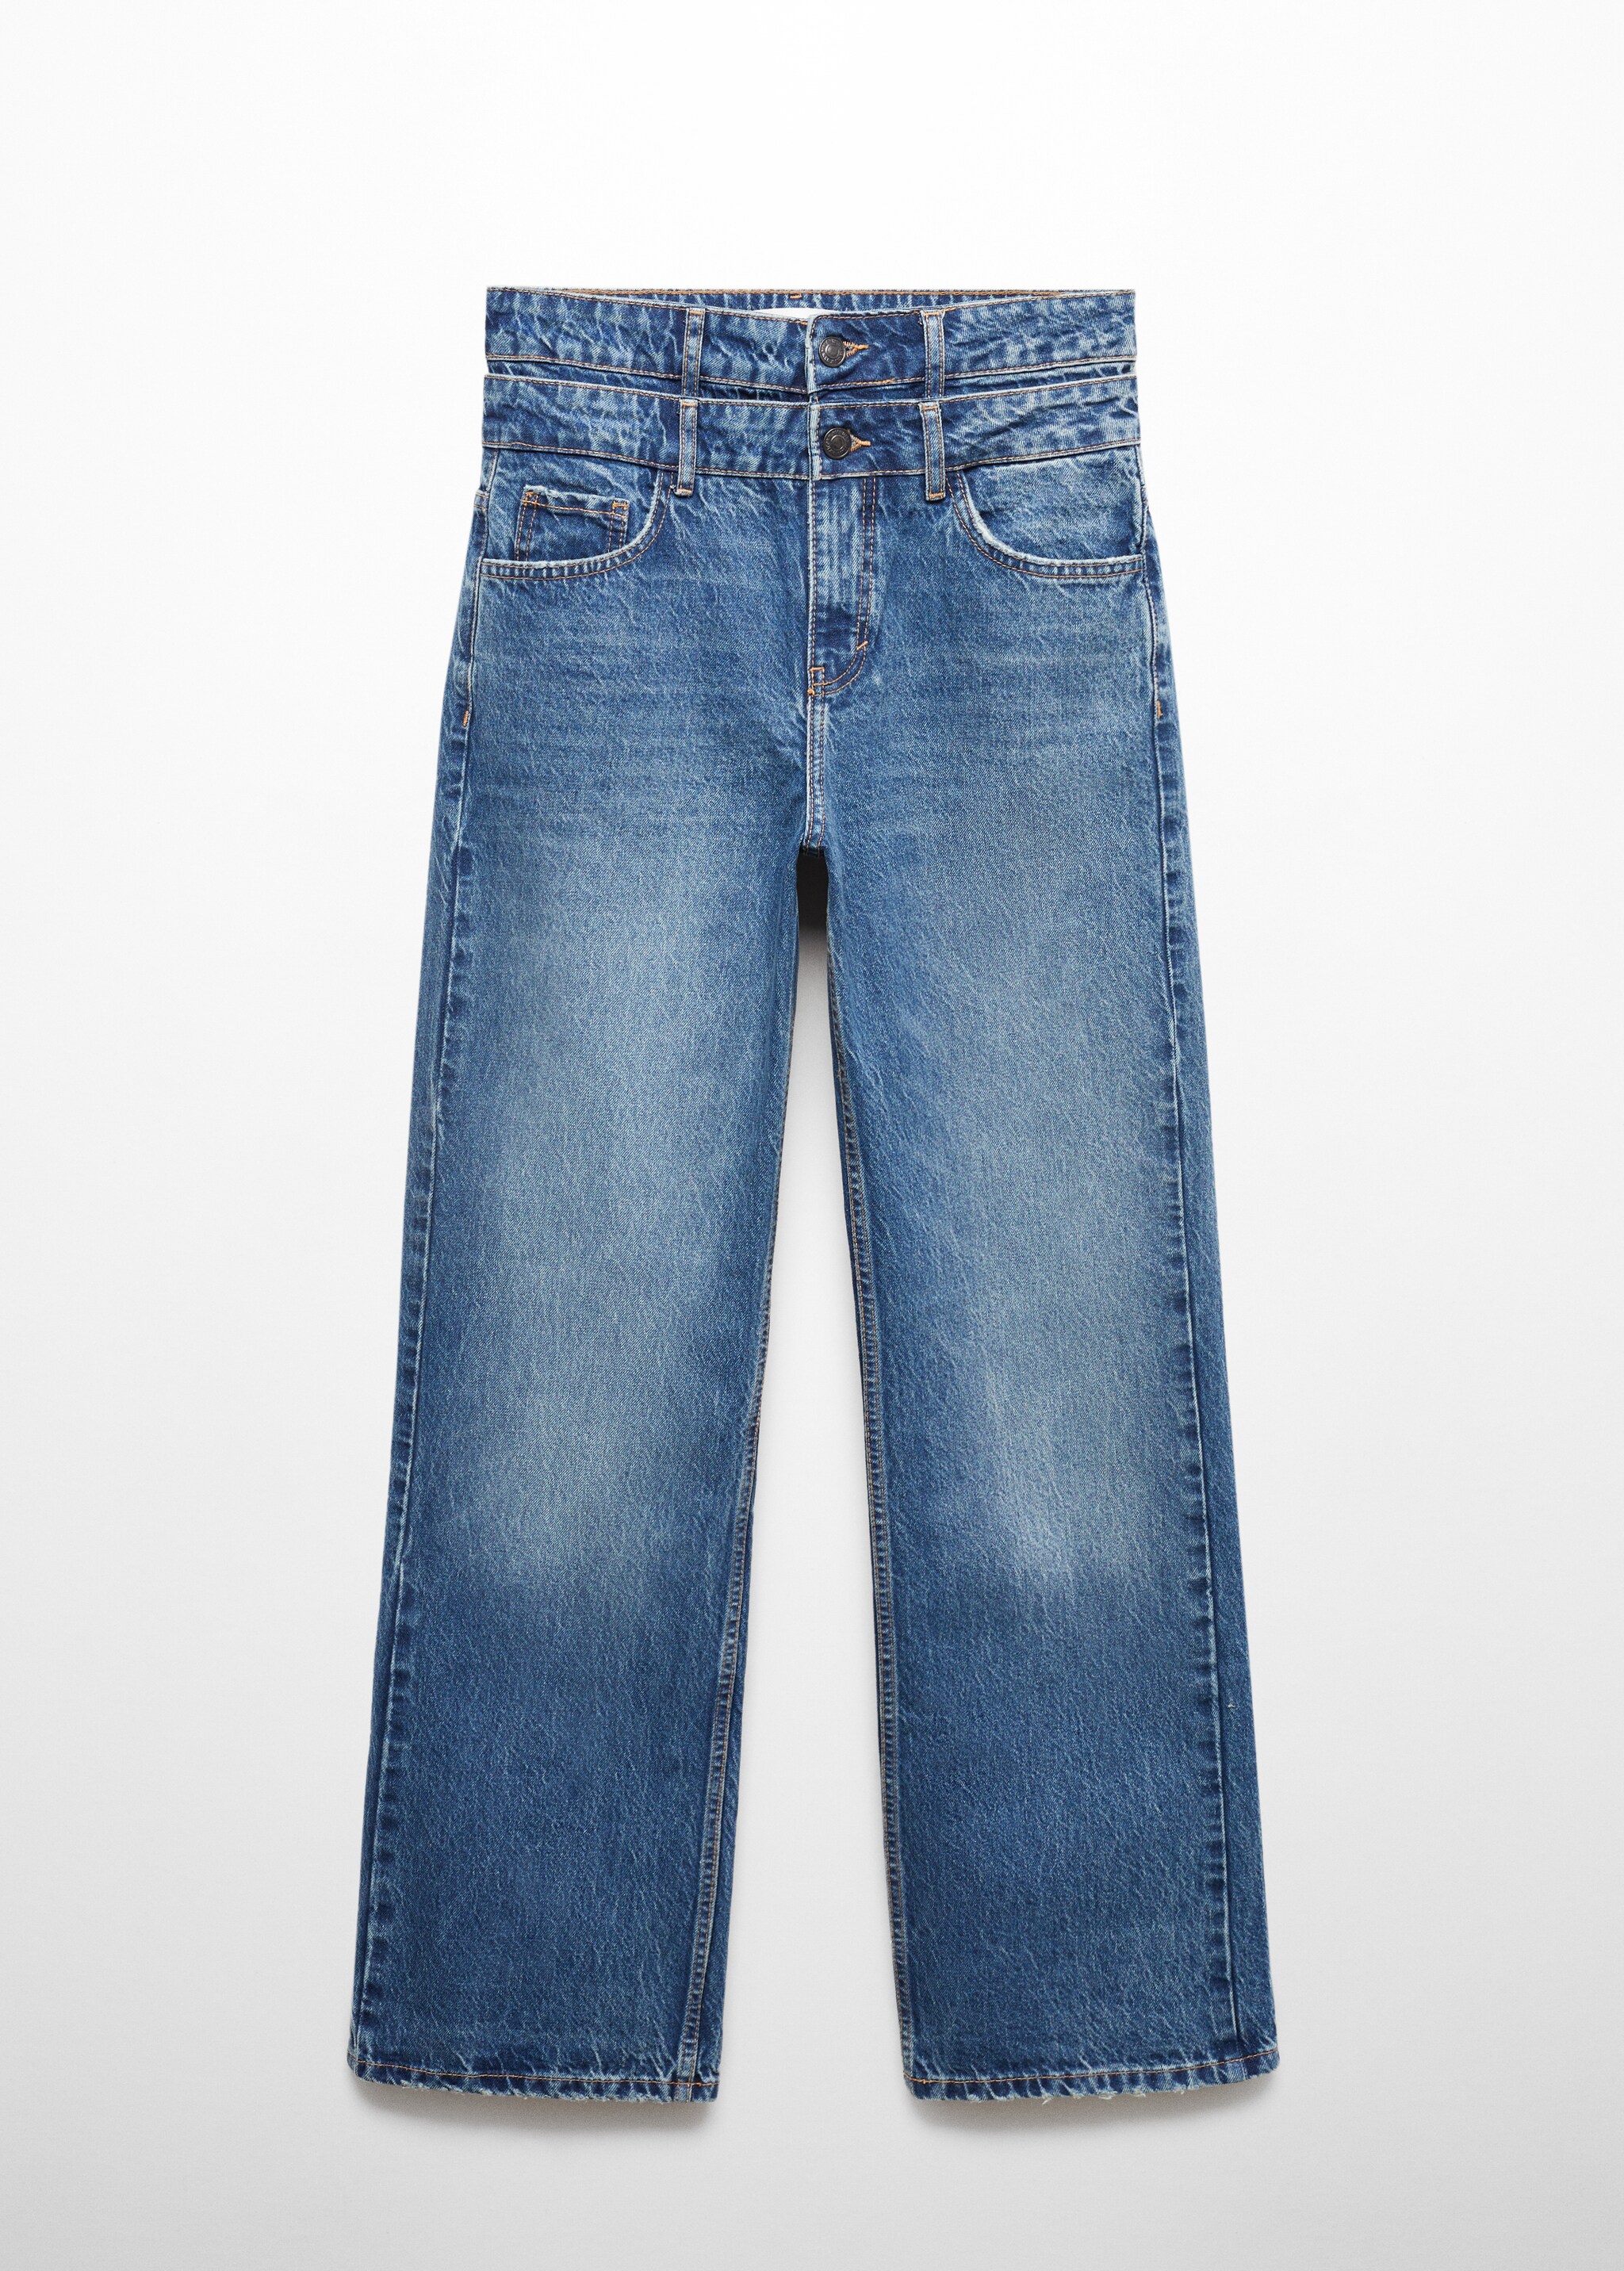 Jeans rectos doble cintura - Artículo sin modelo